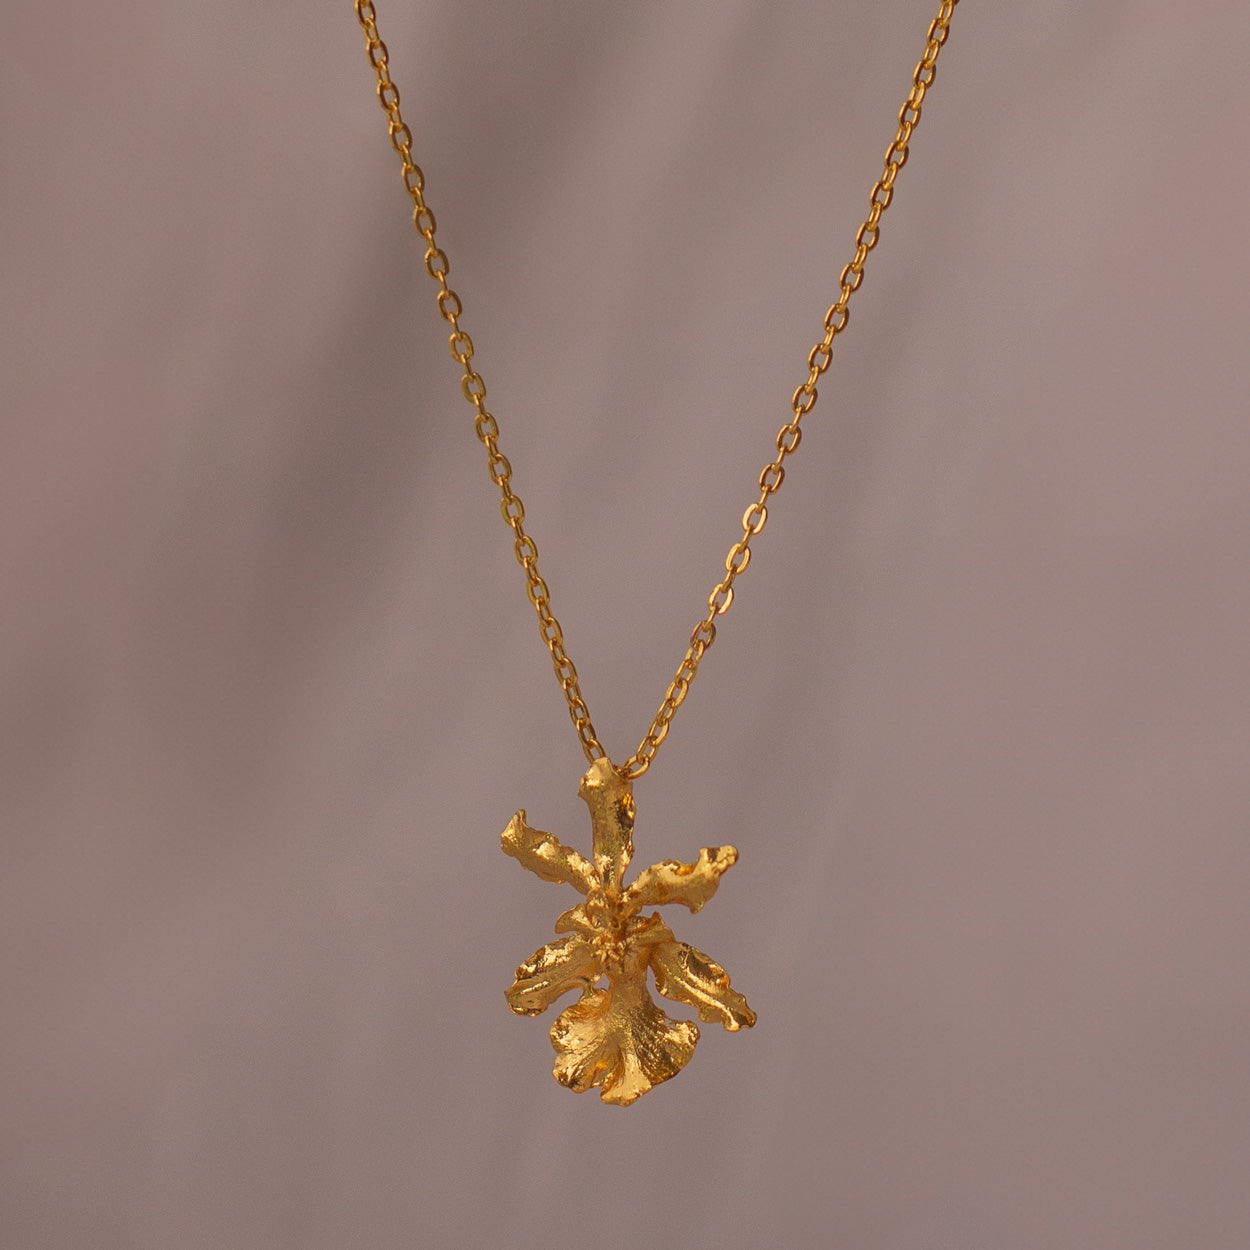 Collar Orquídea Oncidium Chocolate en bronce bañado en oro de 24k, destacando la belleza única de las flores inmortalizadas.